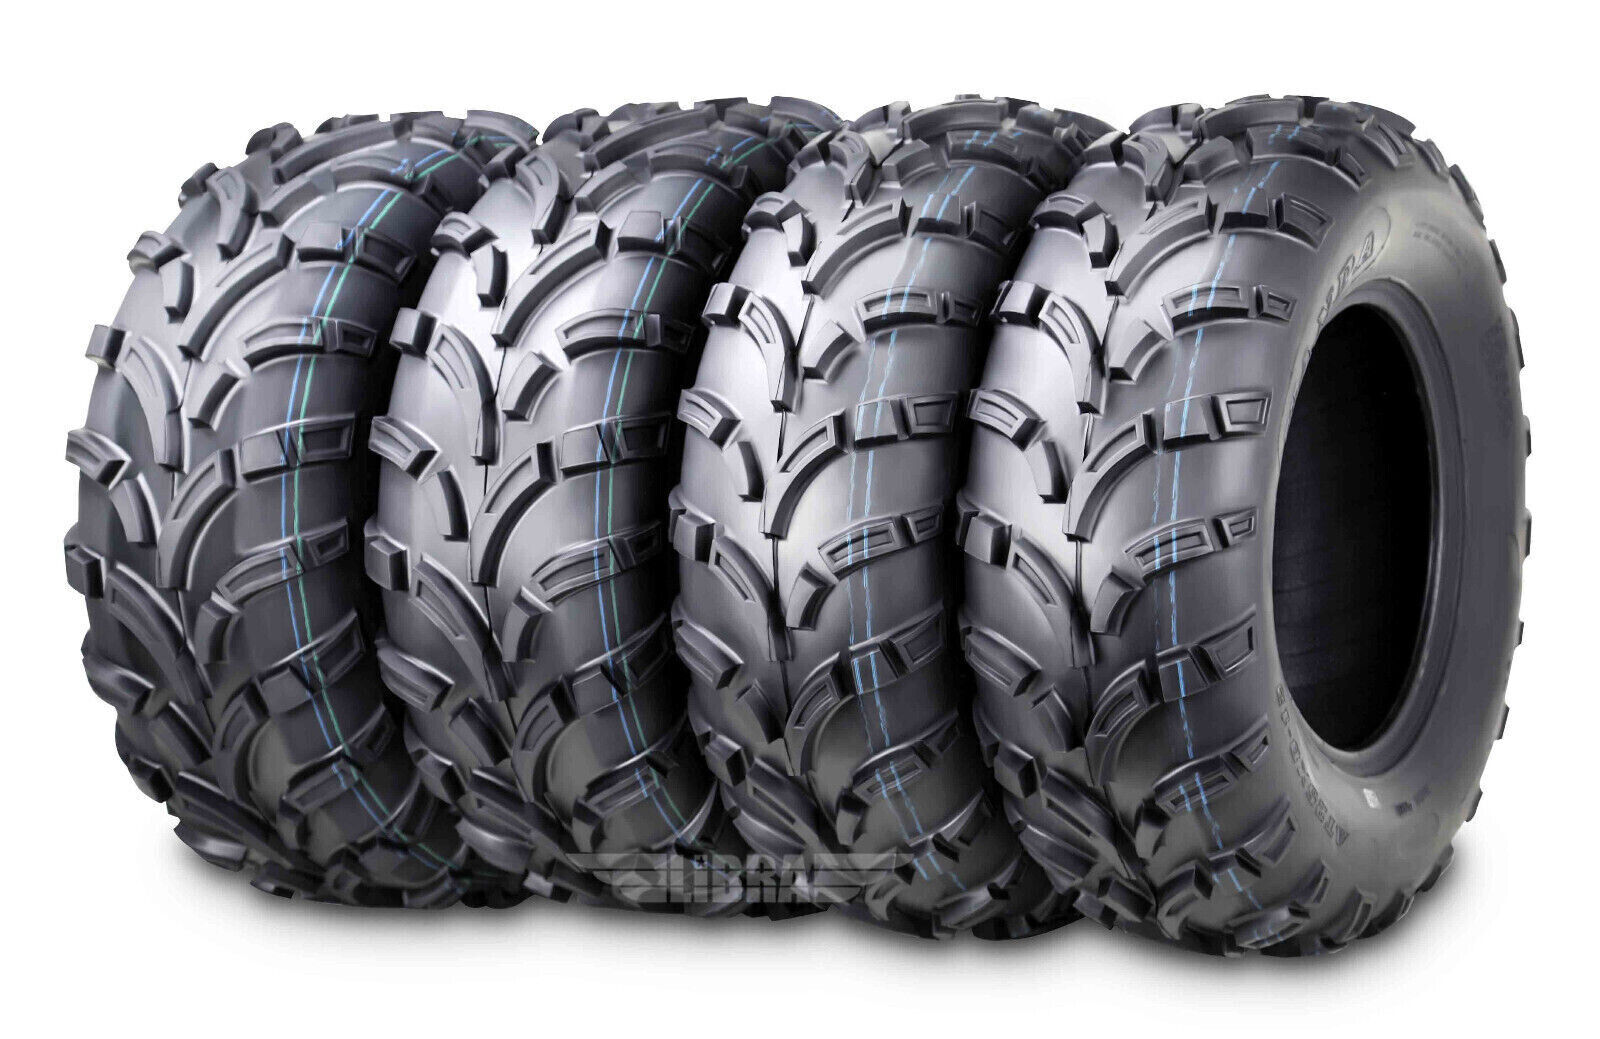 25x10-12 25x11-12 High Load ATV tires for 07-10 John Deere Gator XUV 620I/850D